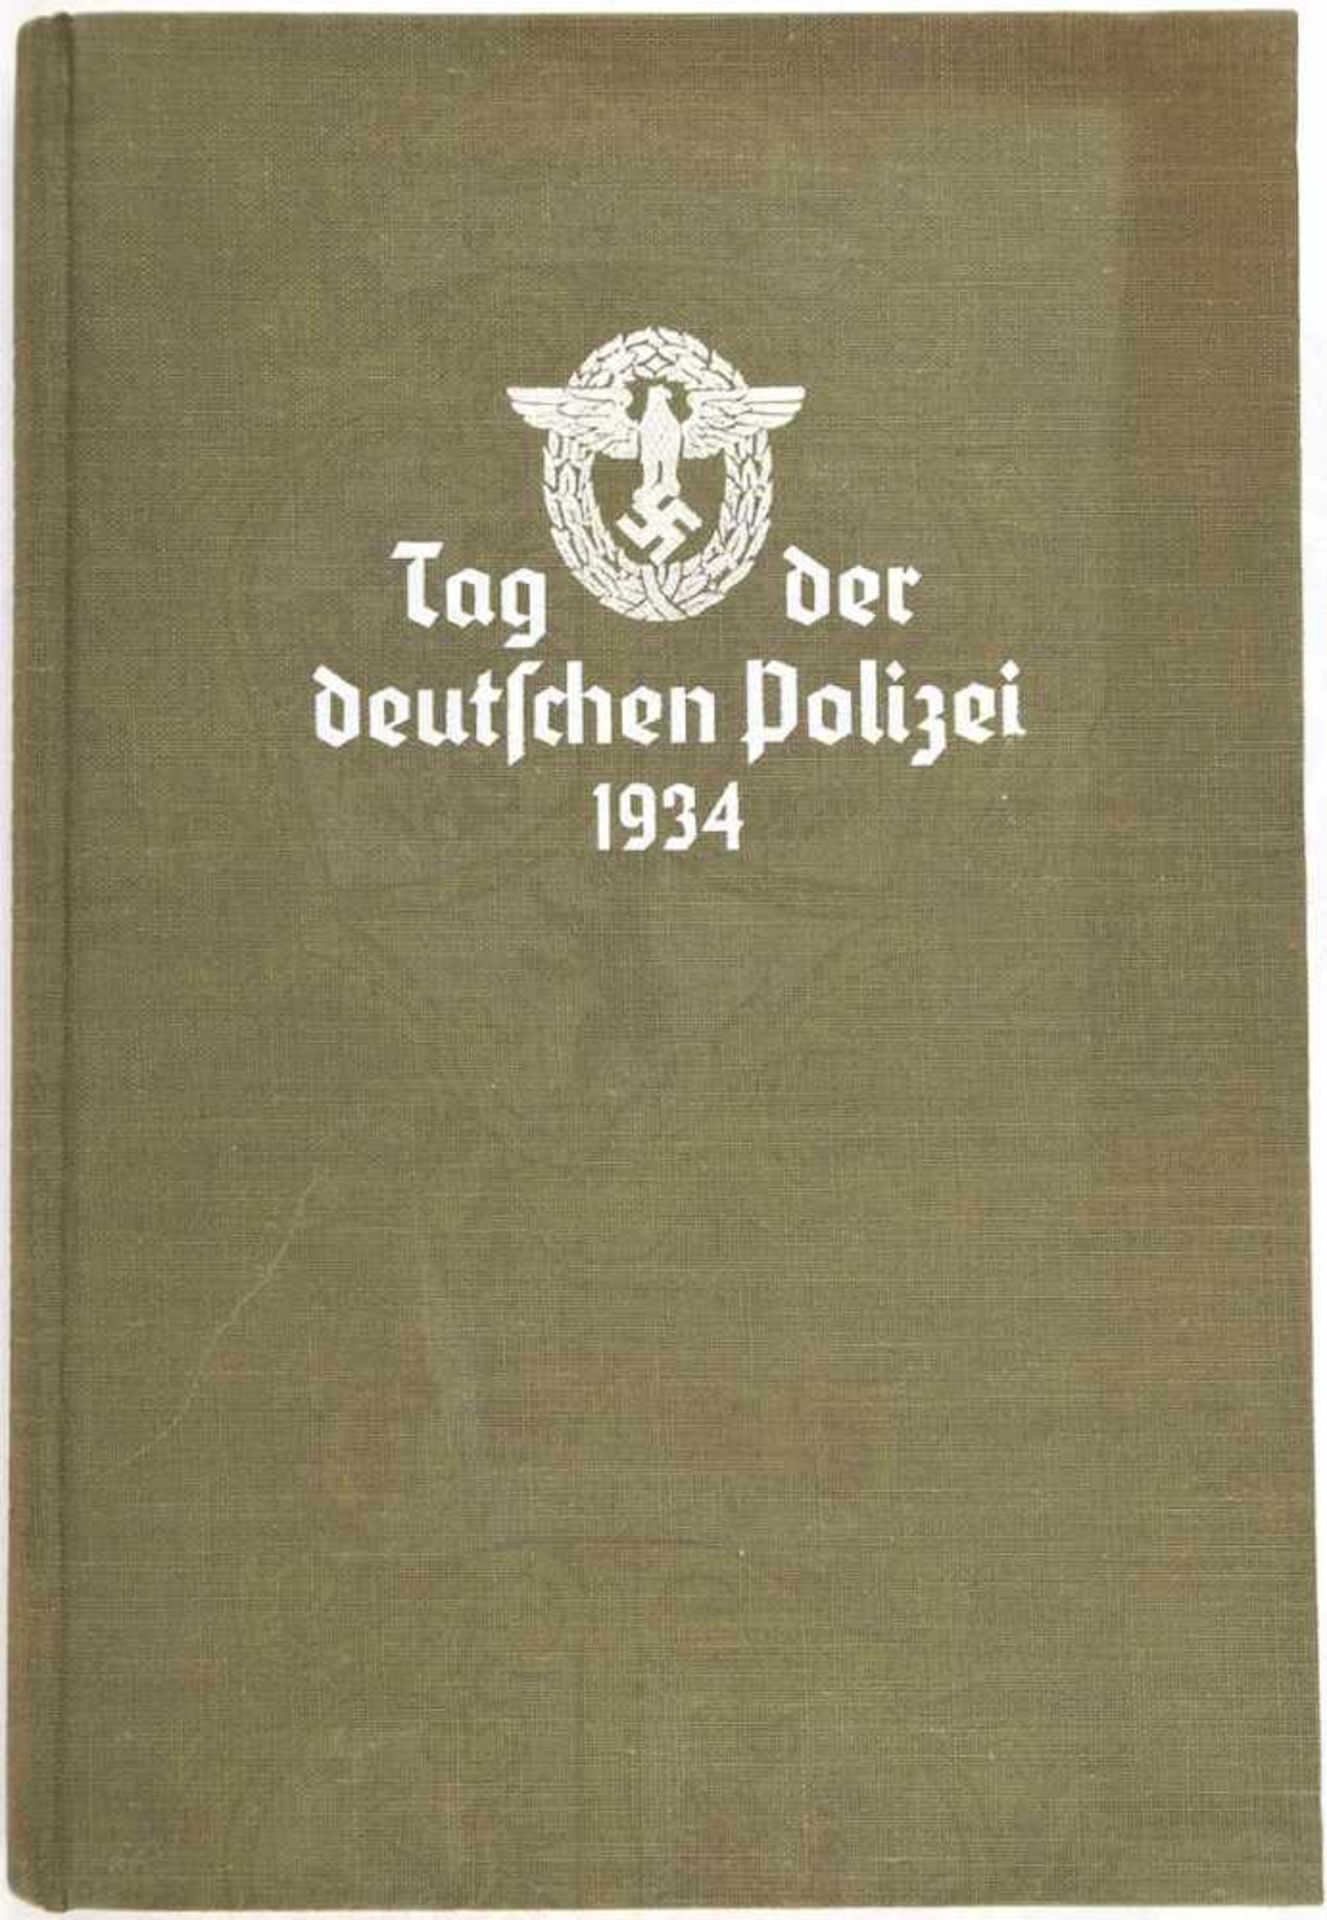 TAG DER DEUTSCHEN POLIZEI 1934, K. Daluege, Eher-Verlag, München 1935, 143 S., Abb., GLn. mit